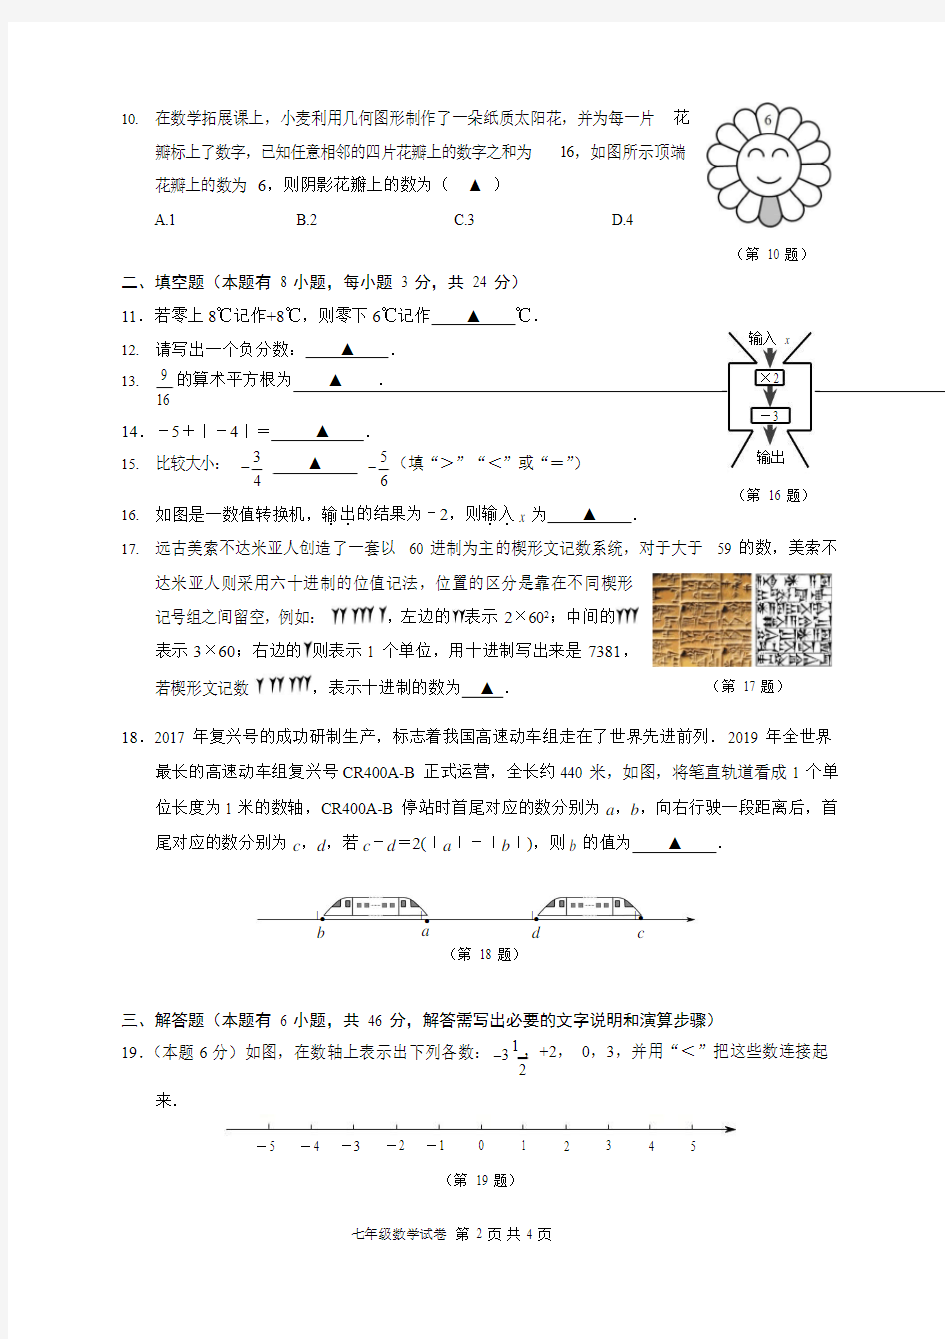 2019 学年第一学期浙江省乐清市中小学教育质量综合评价监测七年级数学试卷及答案